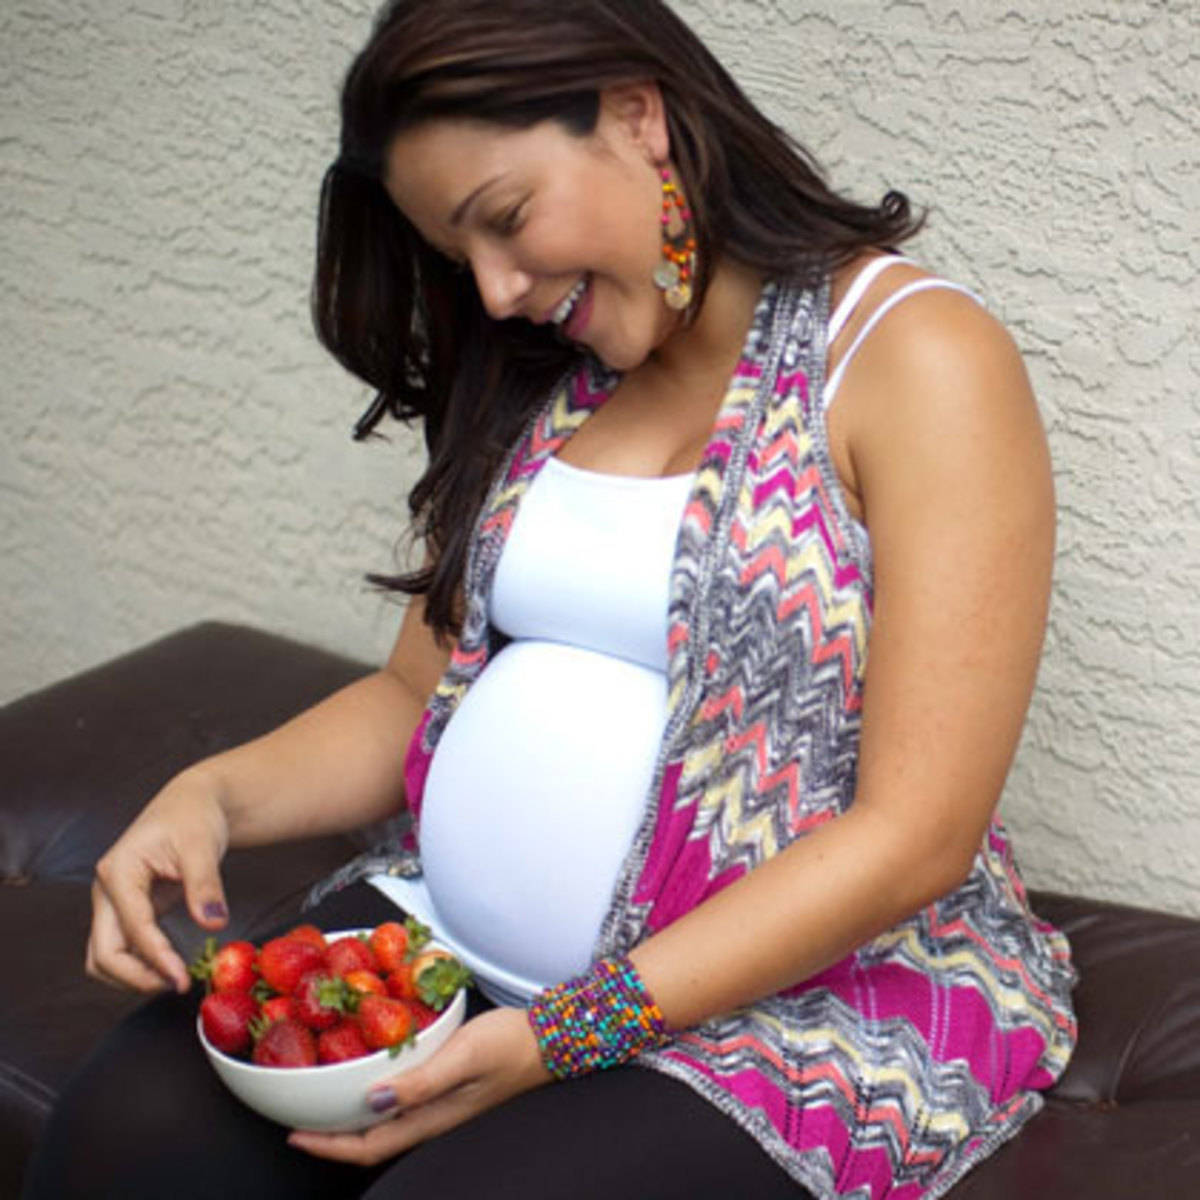 πώς μπορεί μια έγκυος να χάσει βάρος